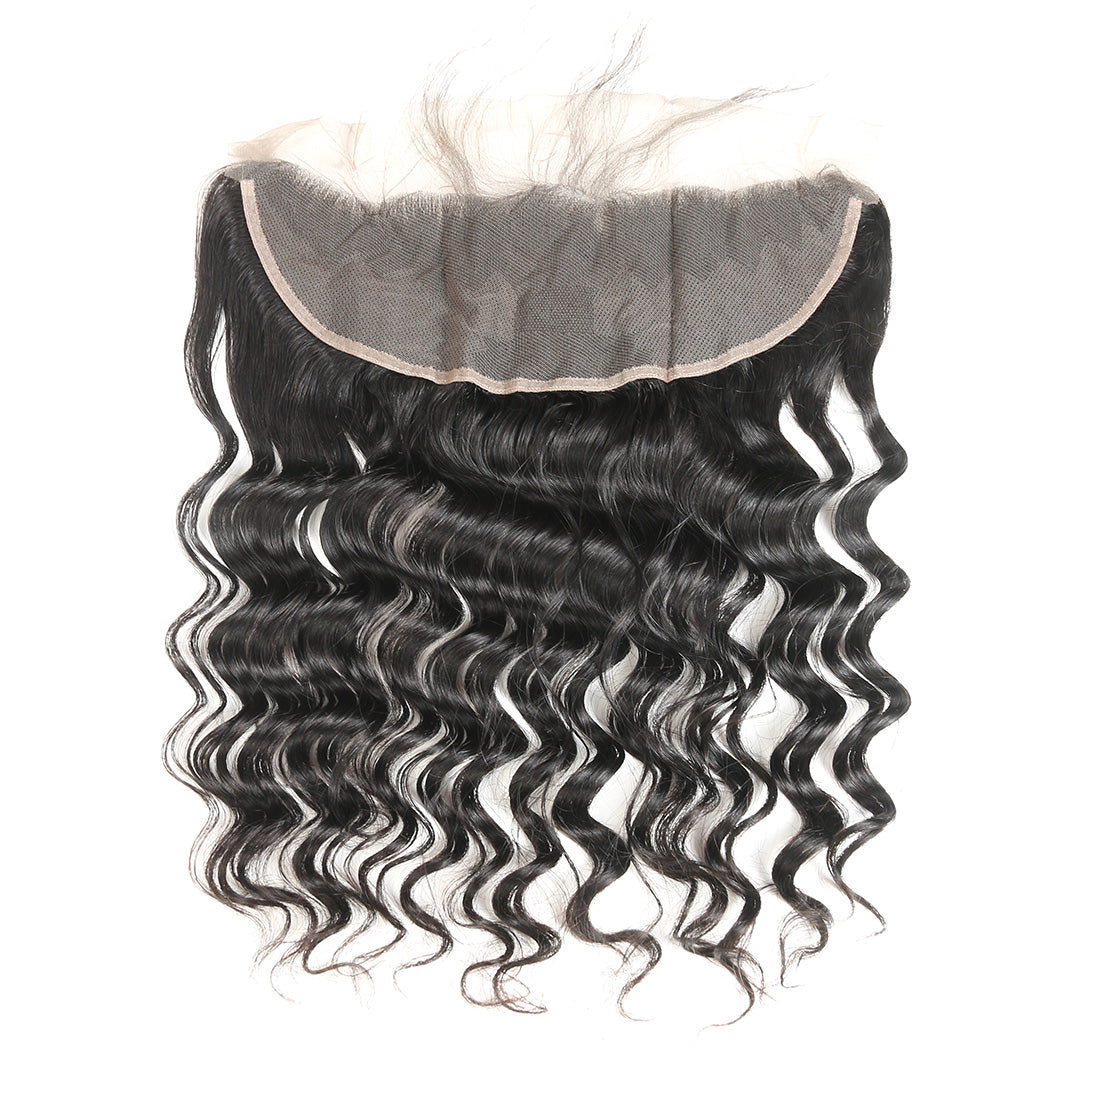 Lace Closure And Frontal Natural Black Human Hair